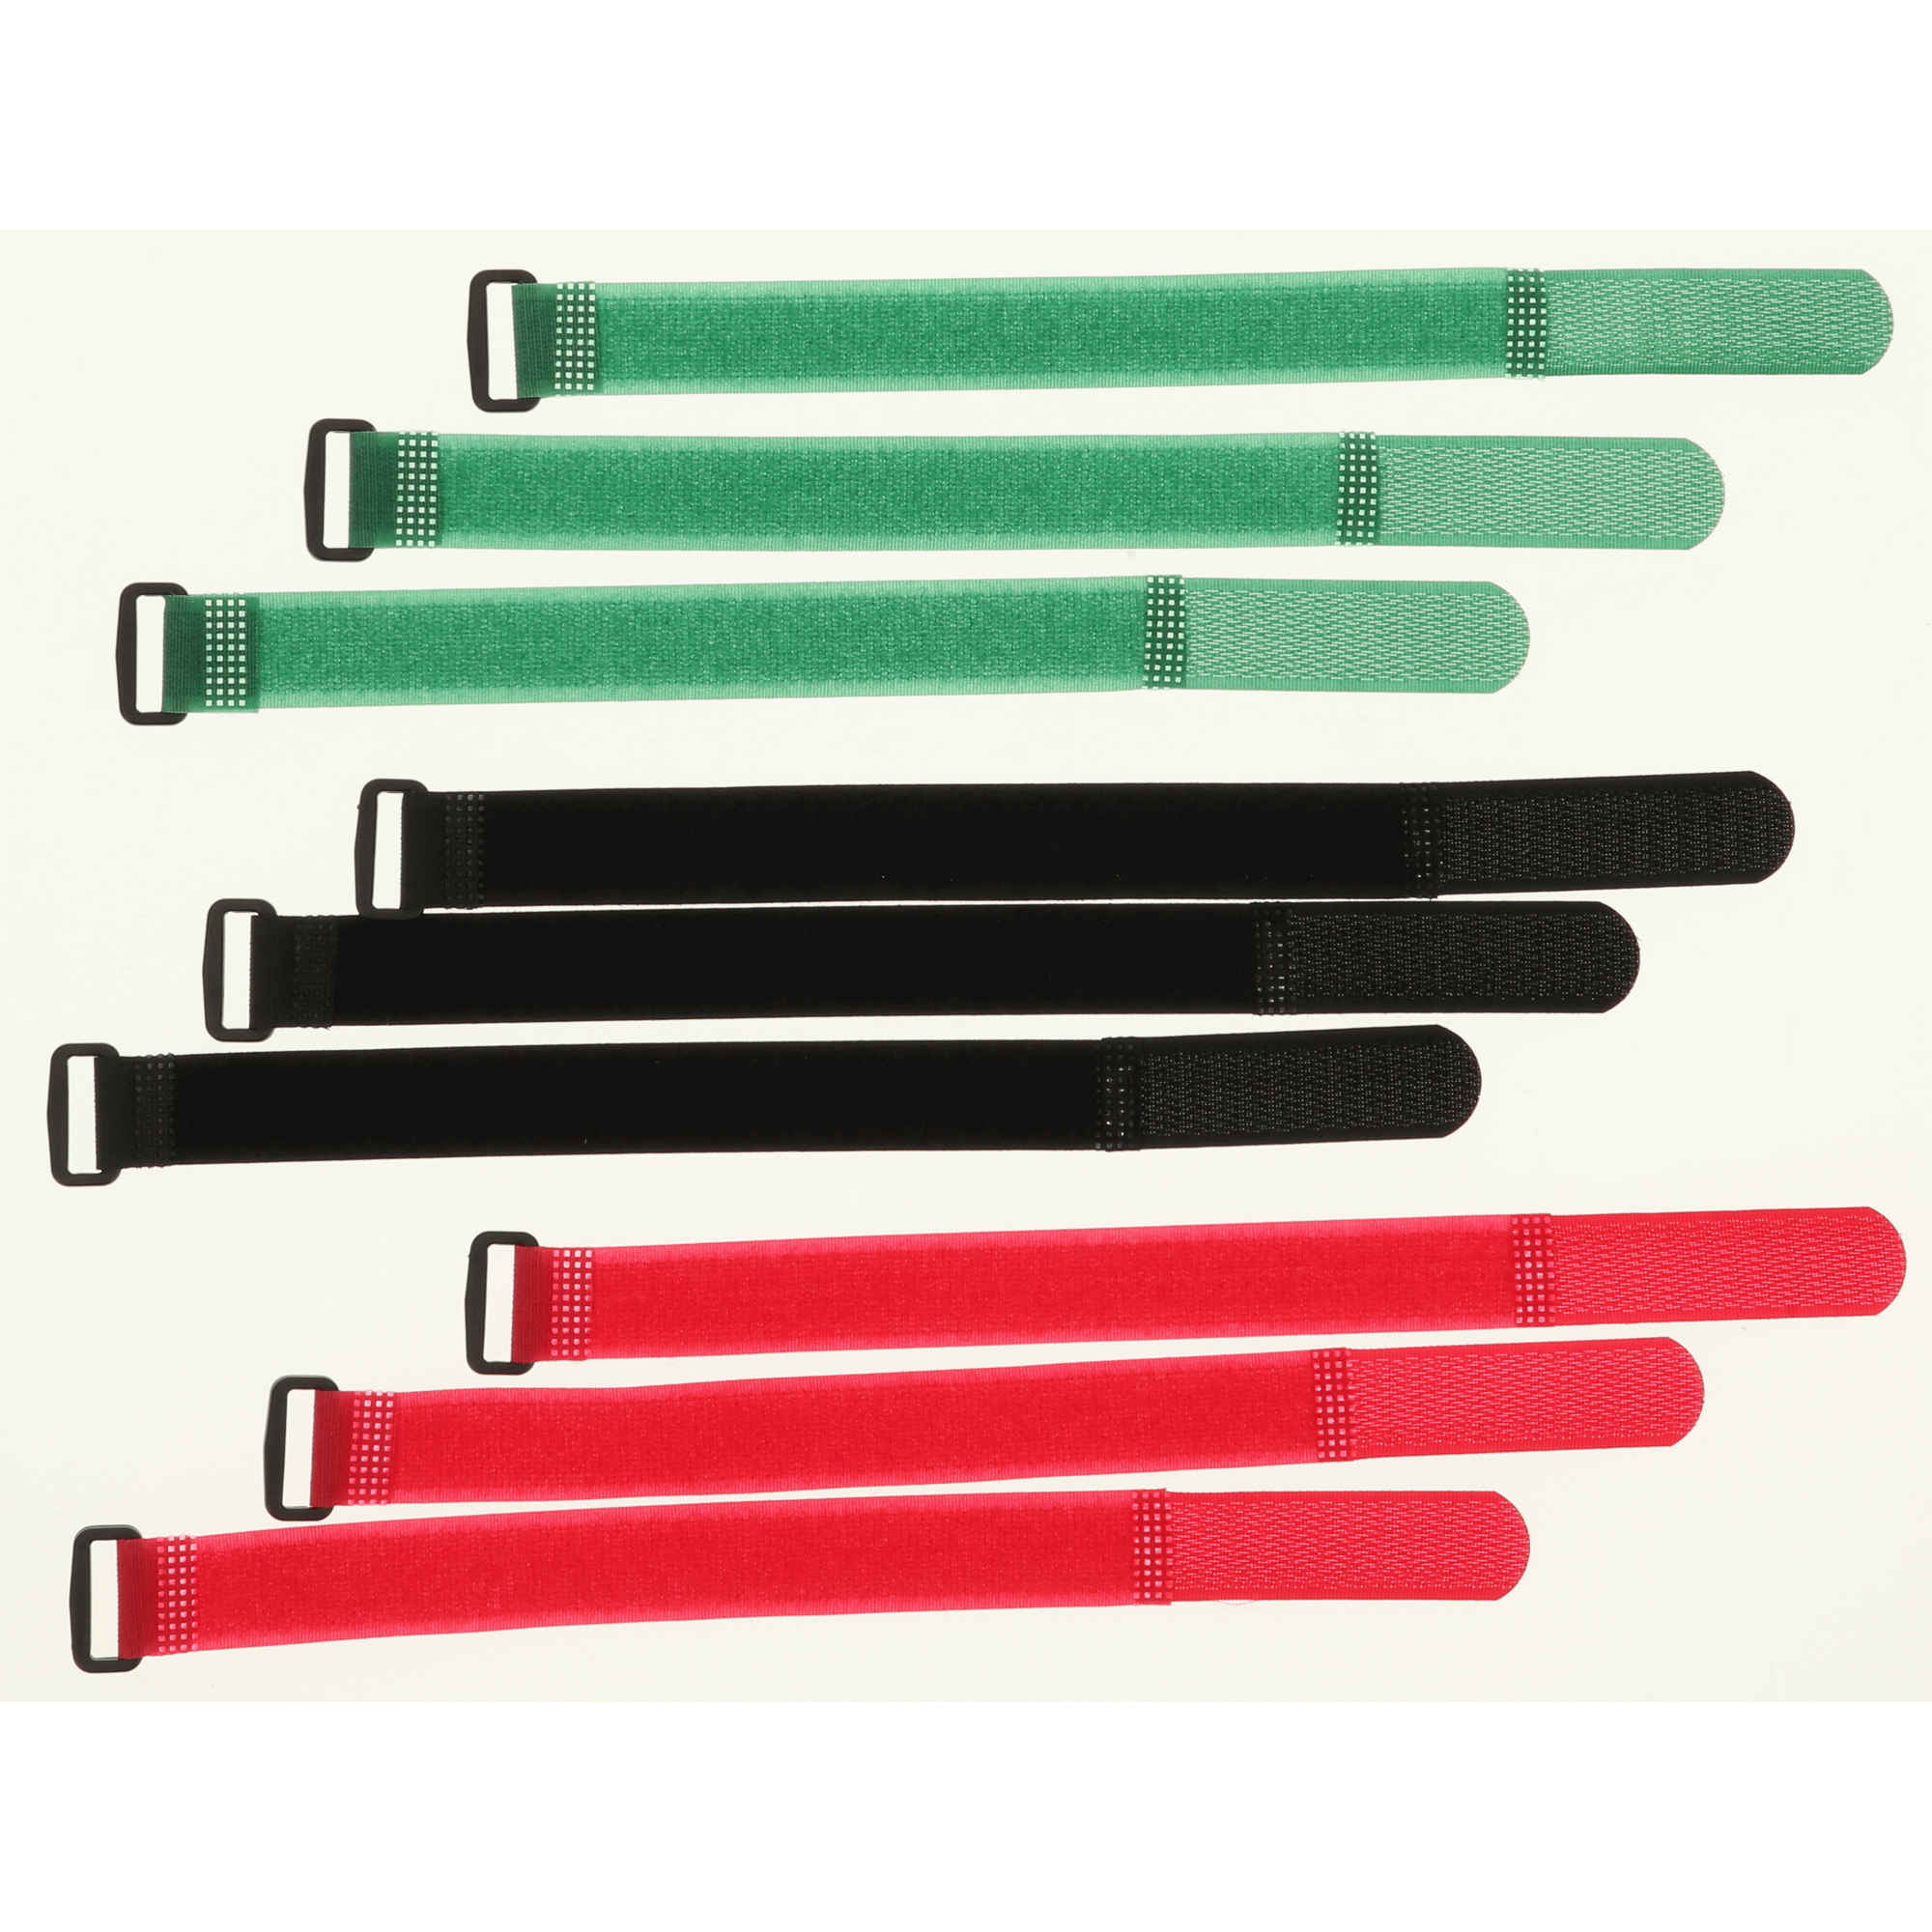 Klettkabelbinder mehrfarbig mit Schnalle 20 x 250 mm, 9 Stück + product picture